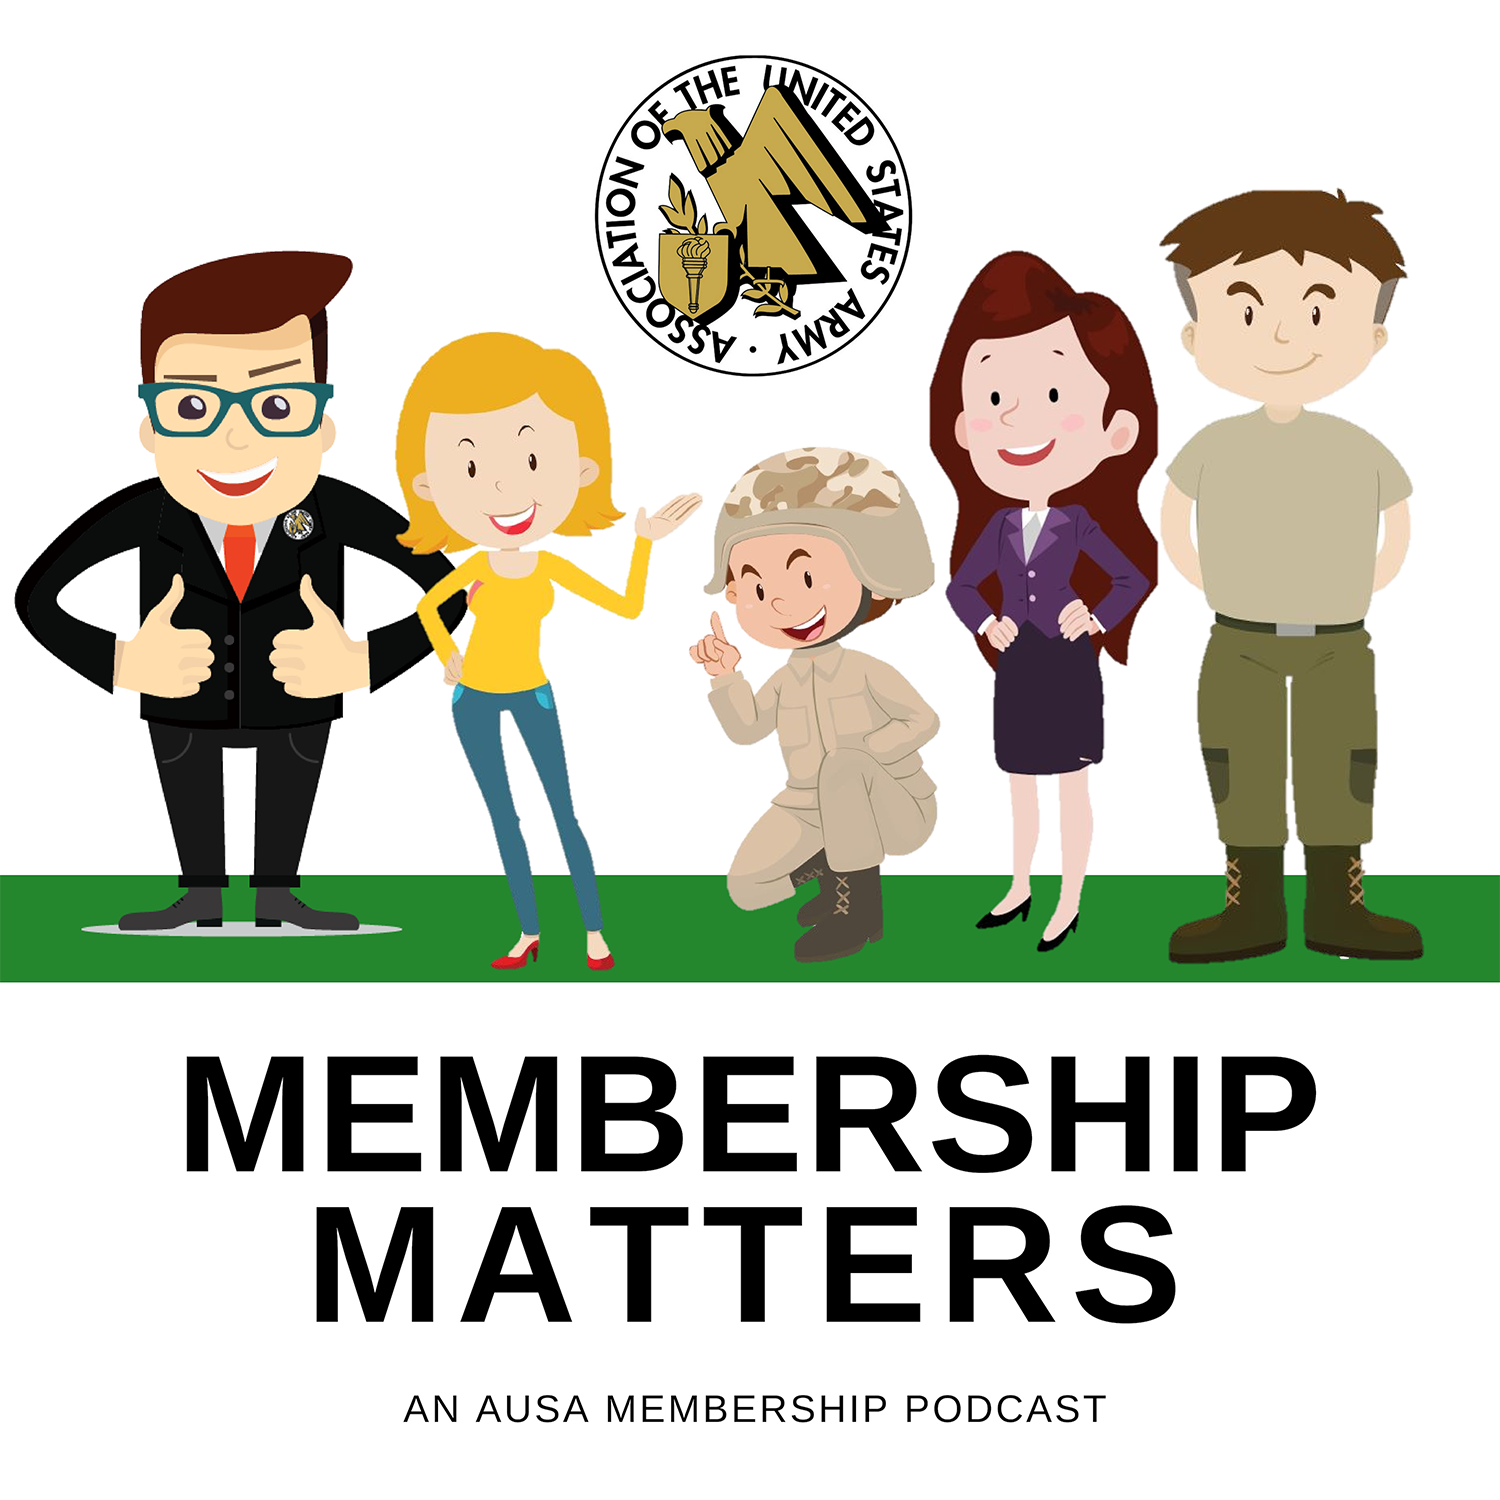 Why Membership Matters